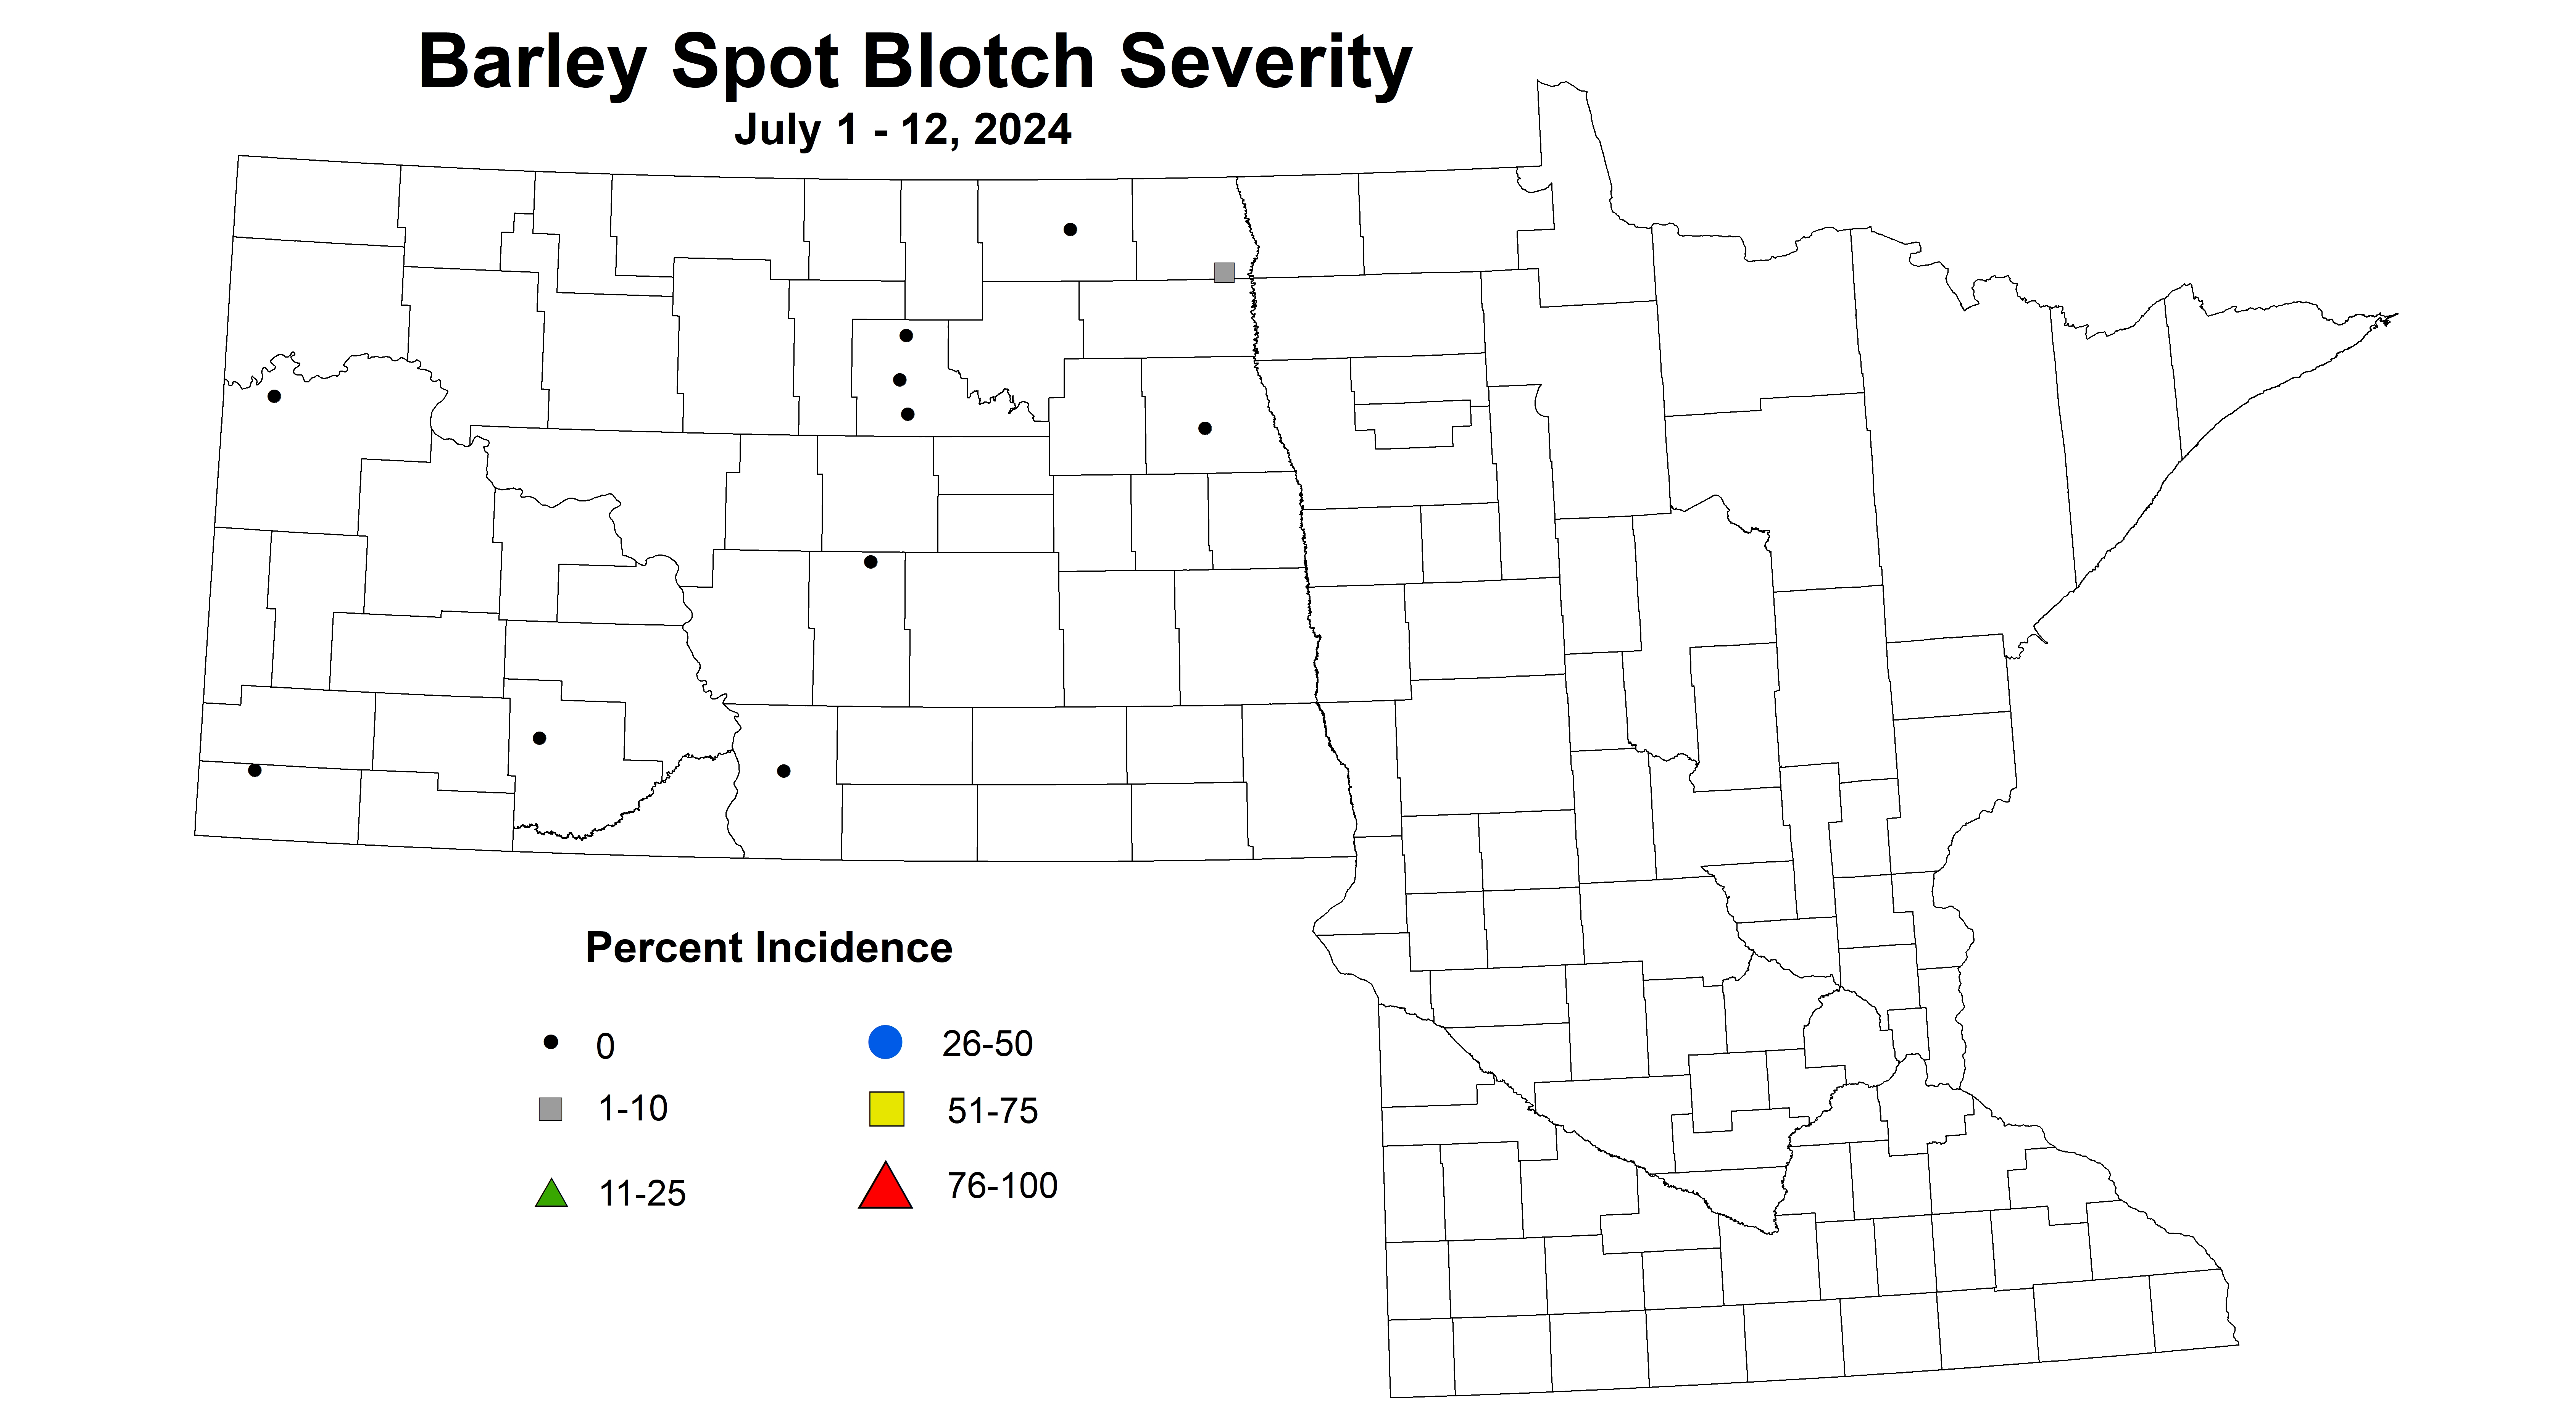 barley spot blotch severity July 1-12 2024